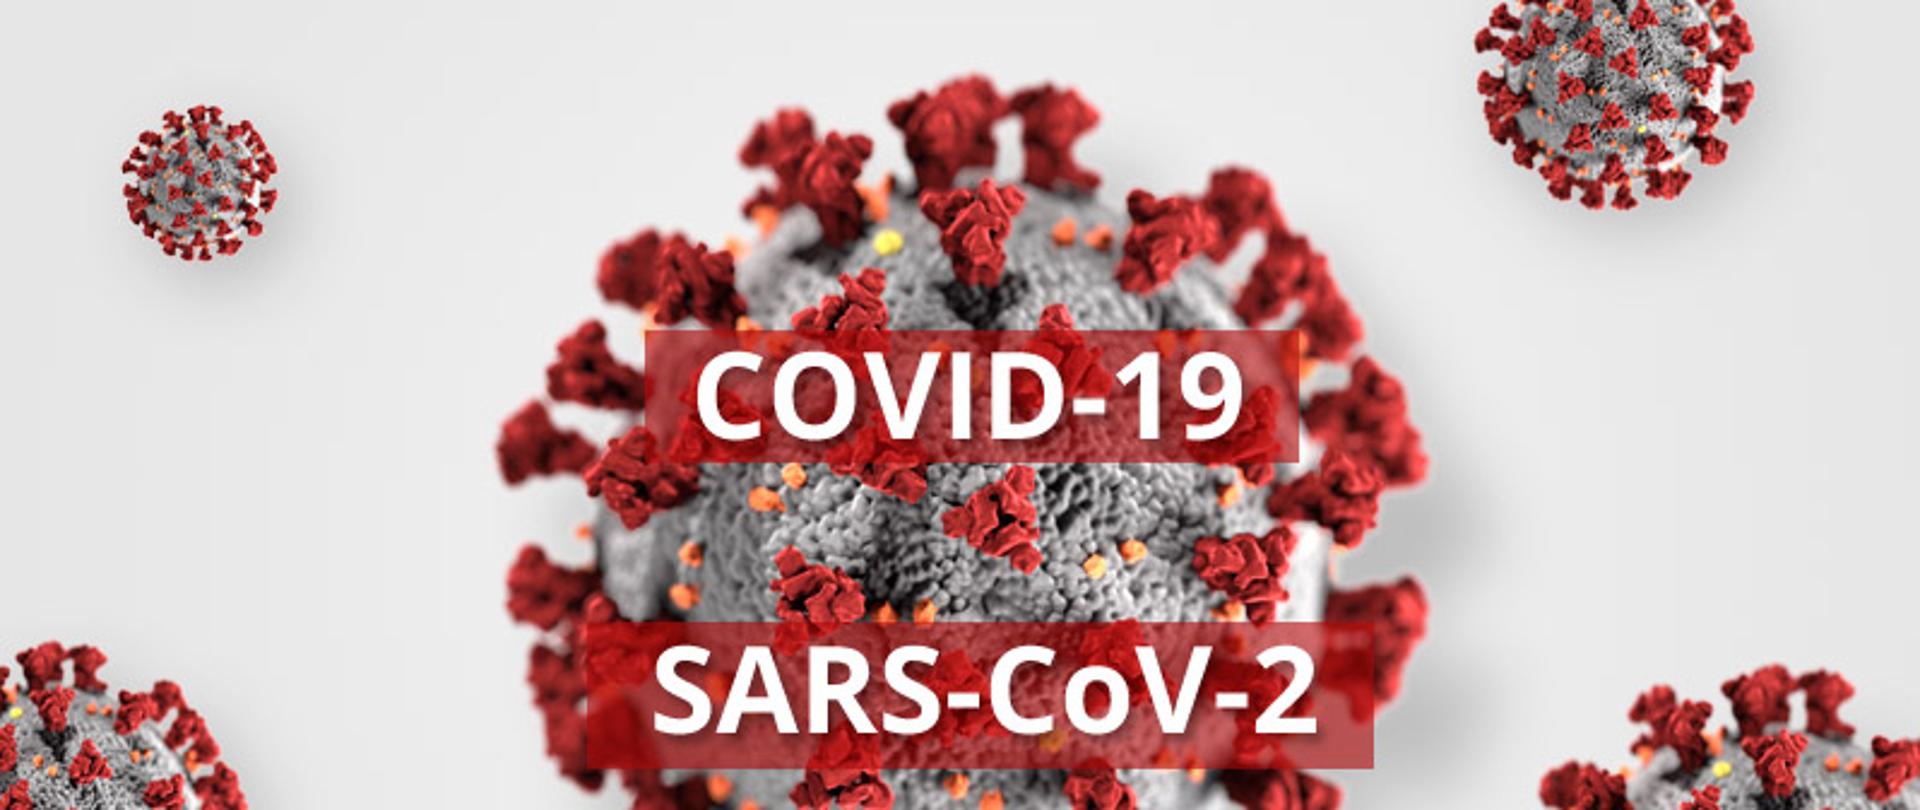 Grafika przedstawiająca korona wirusy w kształcie kulistym szarym z pomarańczowymi kropkami i czerwonymi wypustkami. Na środku widnieje napis COVID-19 SARS-CoV-2.